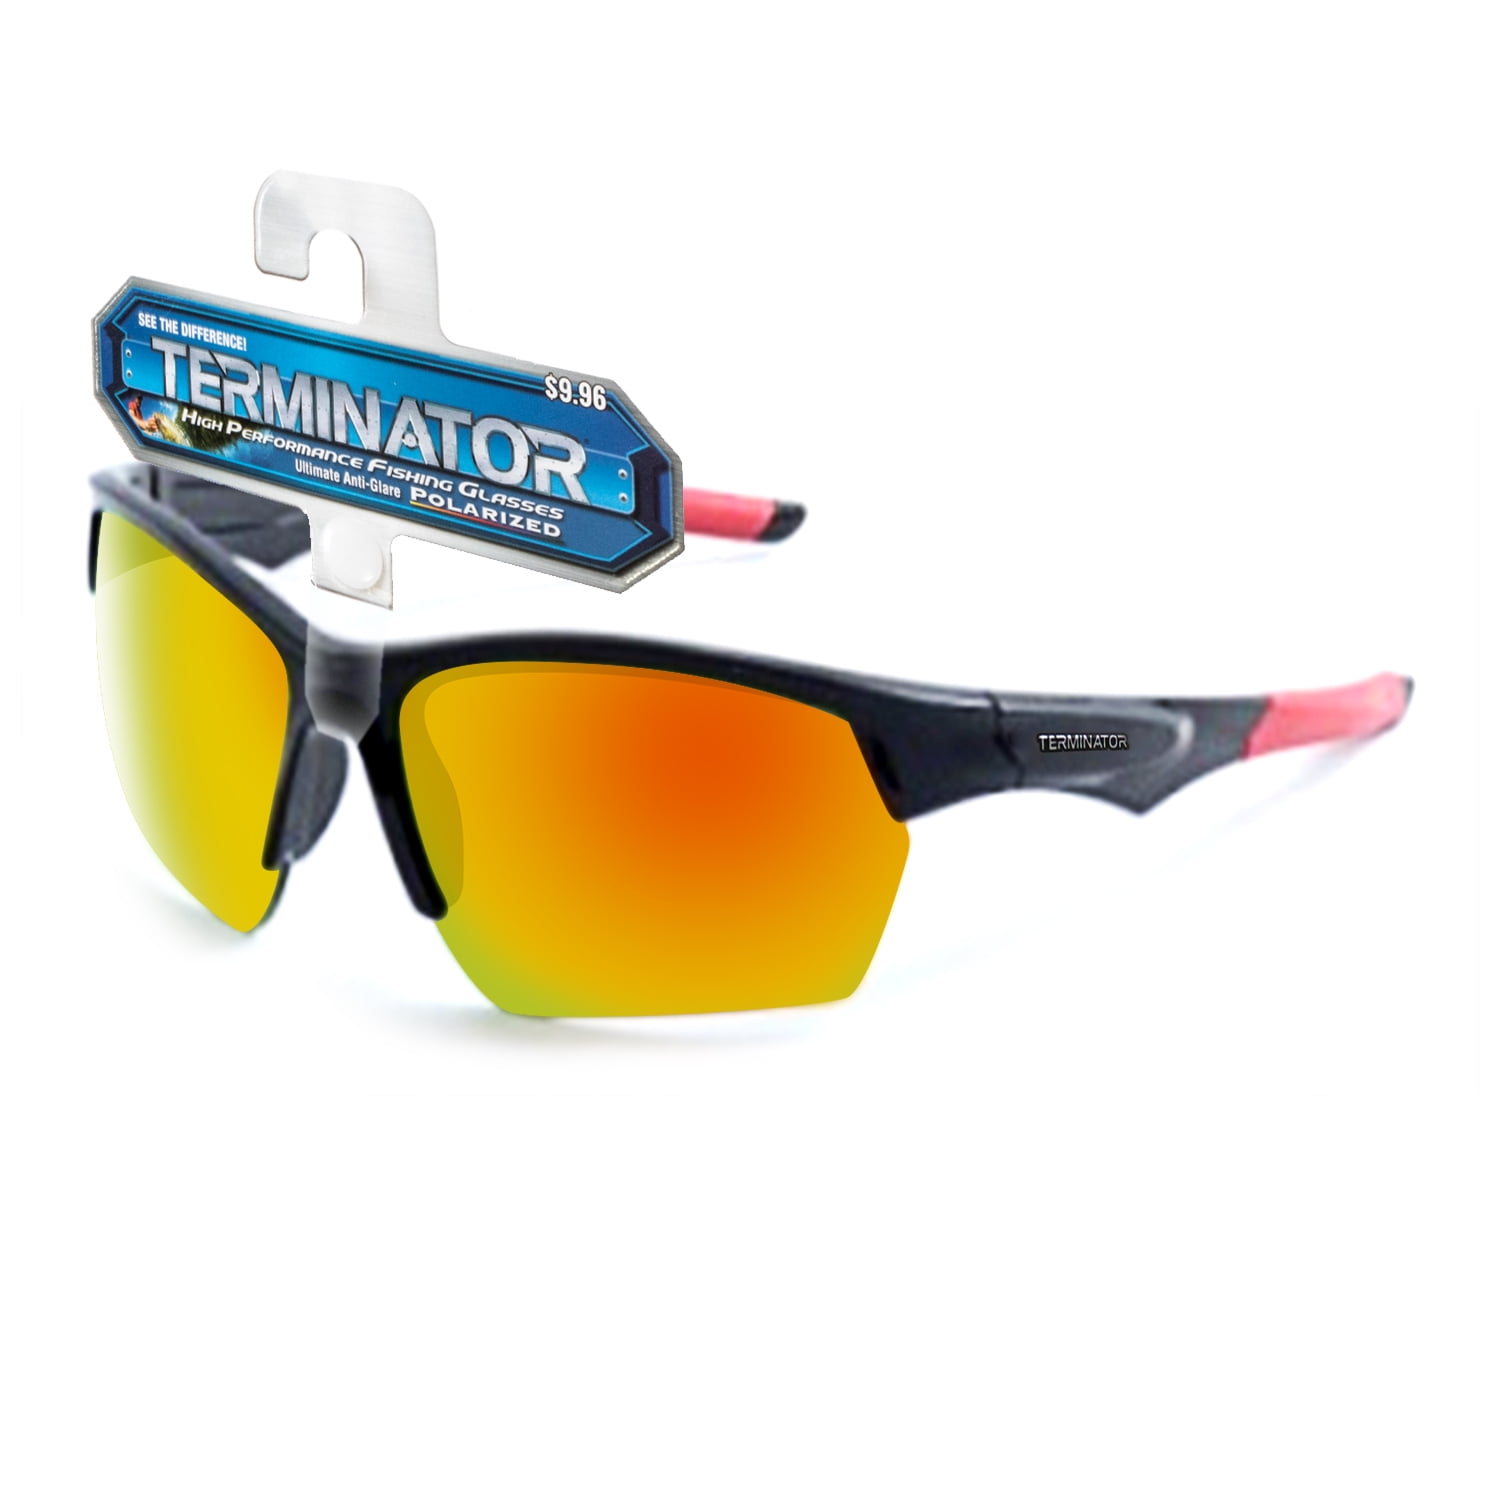 Outdoor Cycling Sunglasses HD Anti-Glare Sport Goggle Mirrored Glasses Women Men 